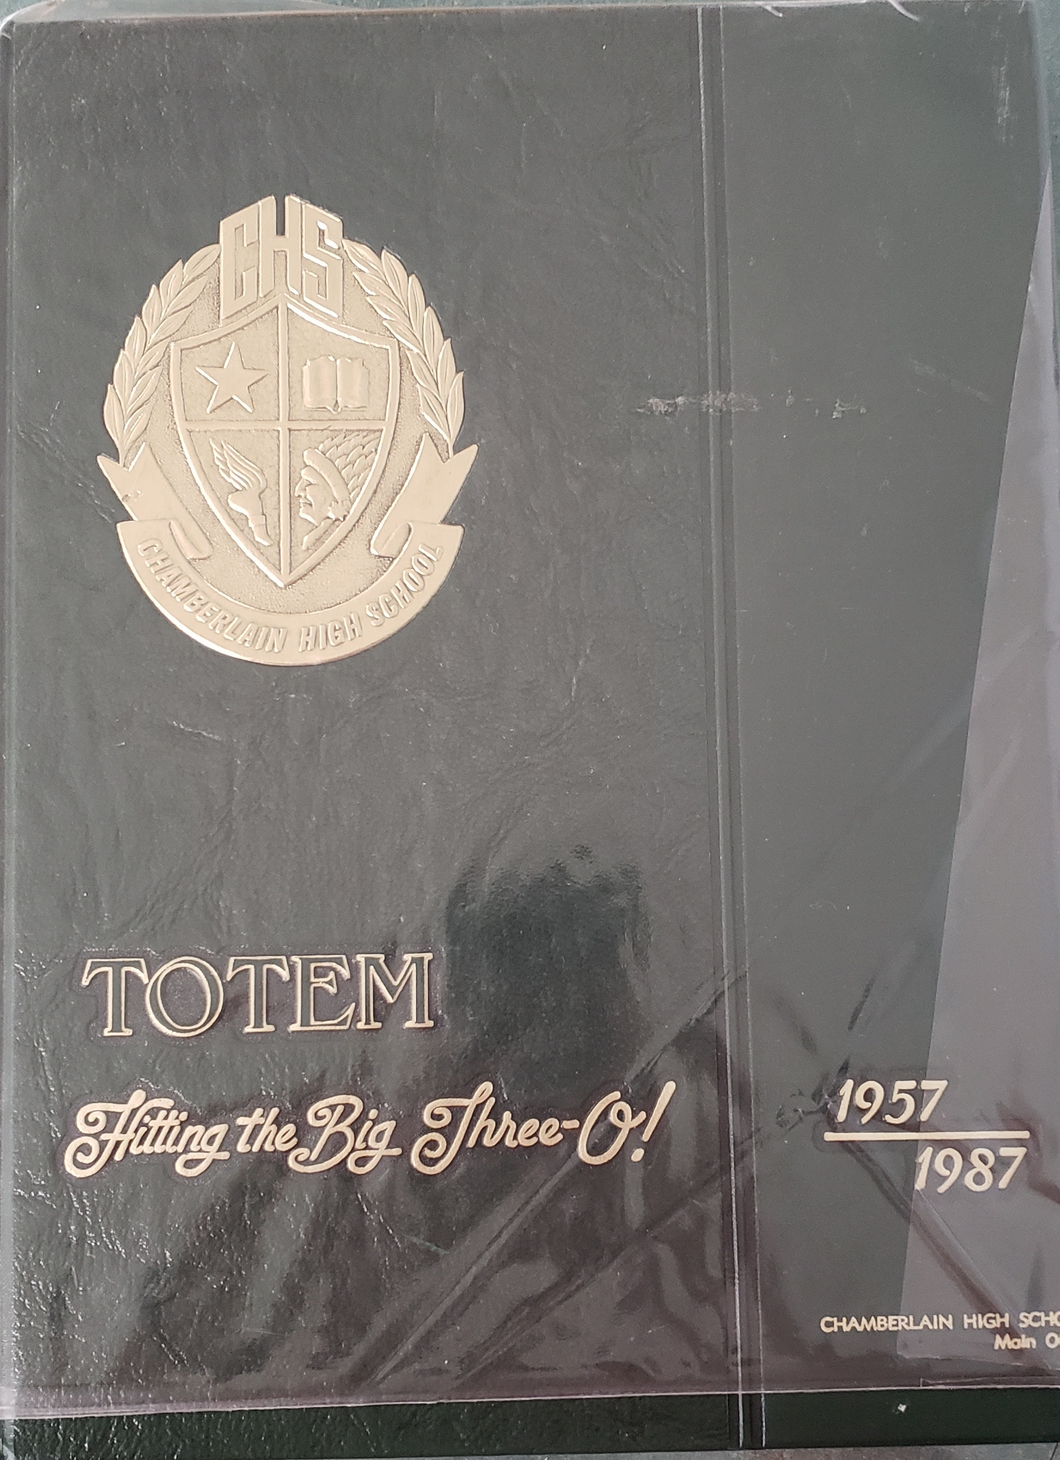 1987 Chamberlain High School Totem Yearbook